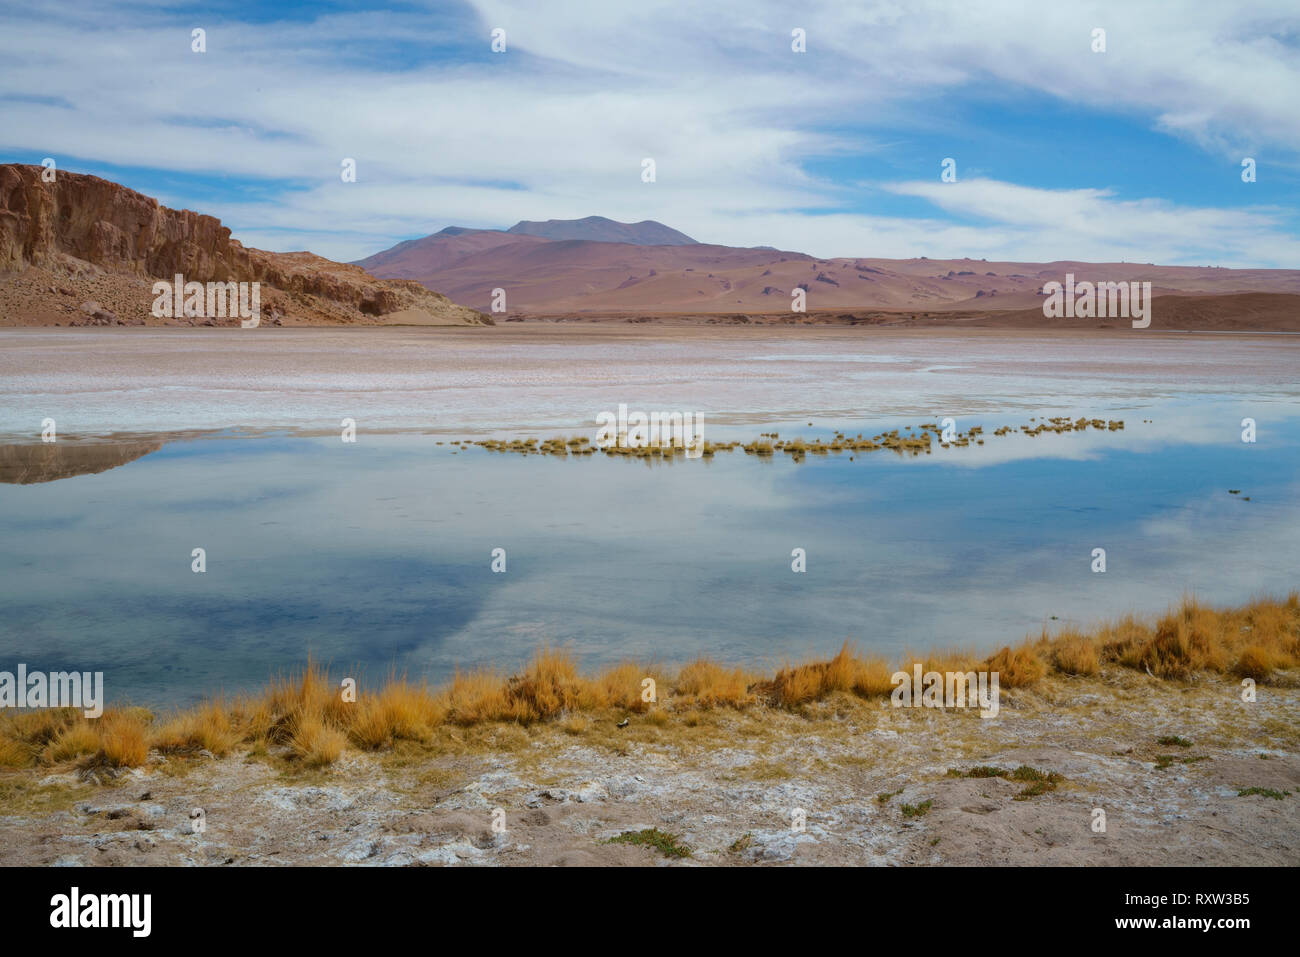 Die Hälfte Salz, halb Wasser, das Altiplano See in der Atacama Wüste ist ein sehr ungewöhnliches Ökosystem. Bei rund 13.000 ft. Chile, Südamerika Stockfoto